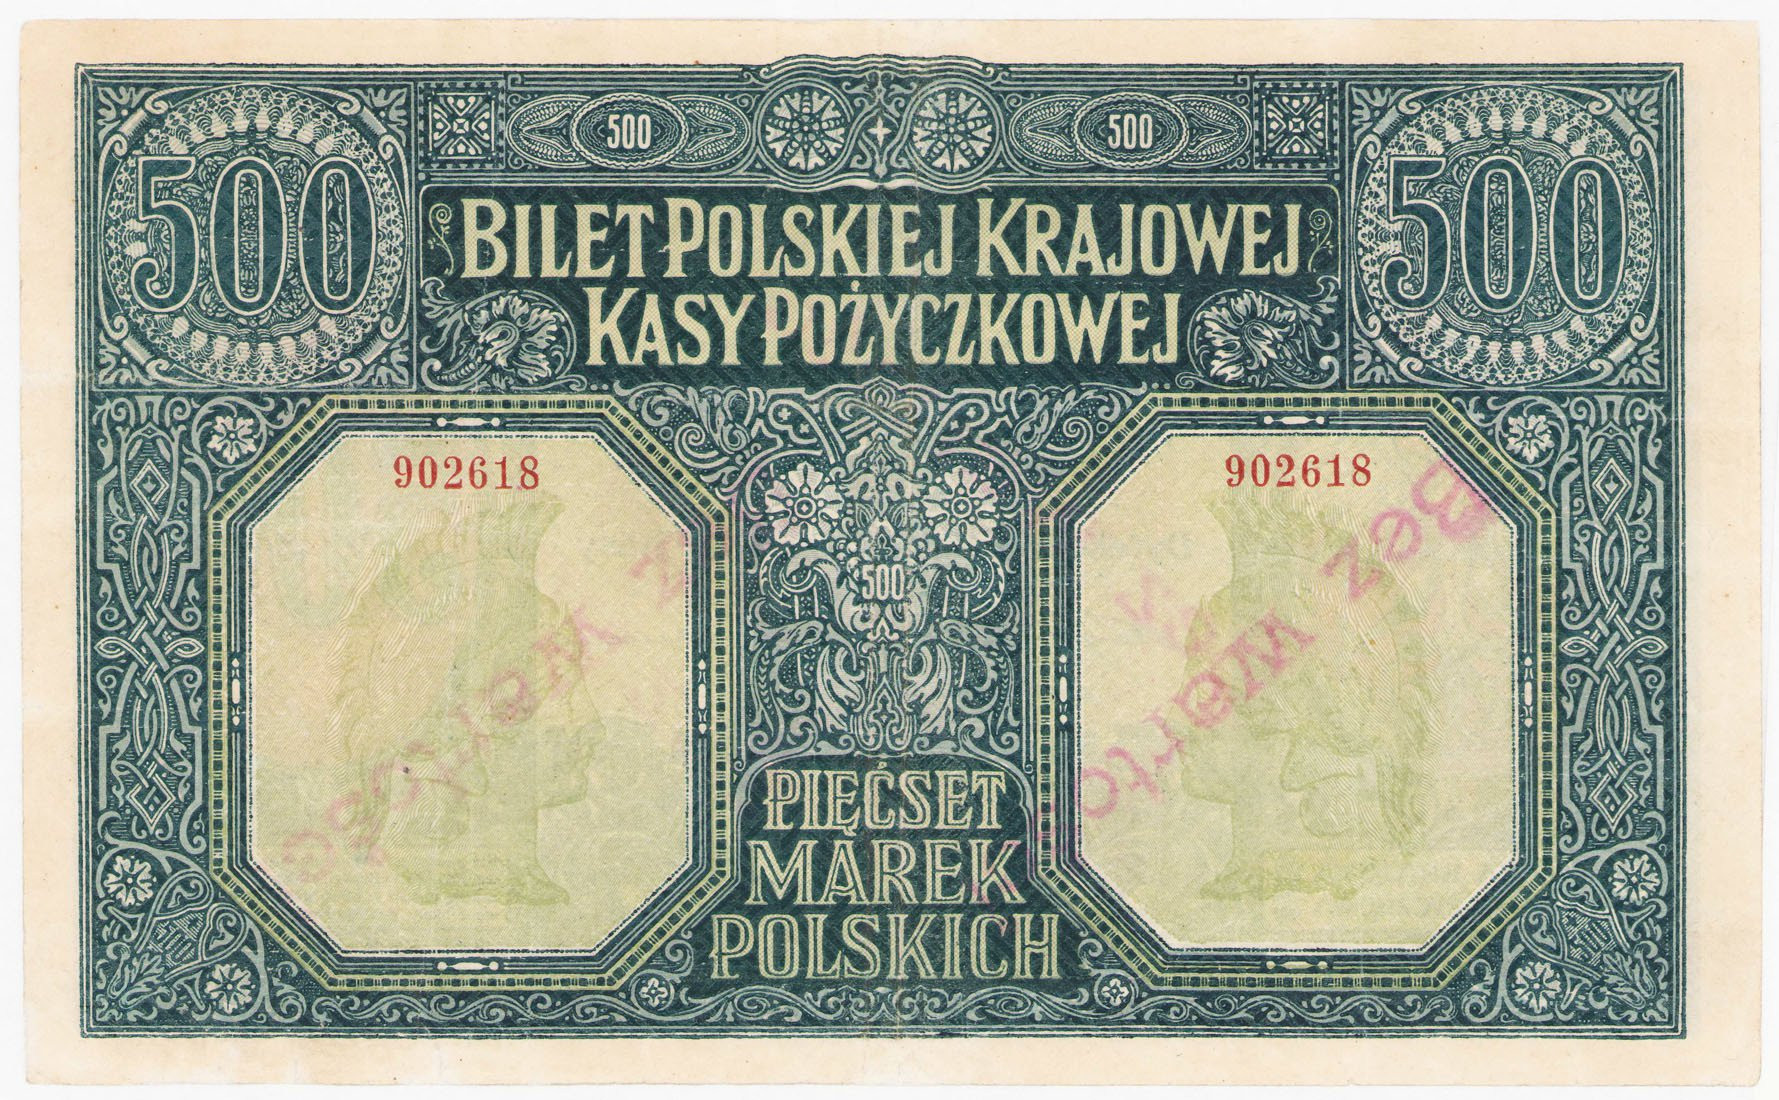 500 marek polskich 1919 - RZADKOŚĆ R5